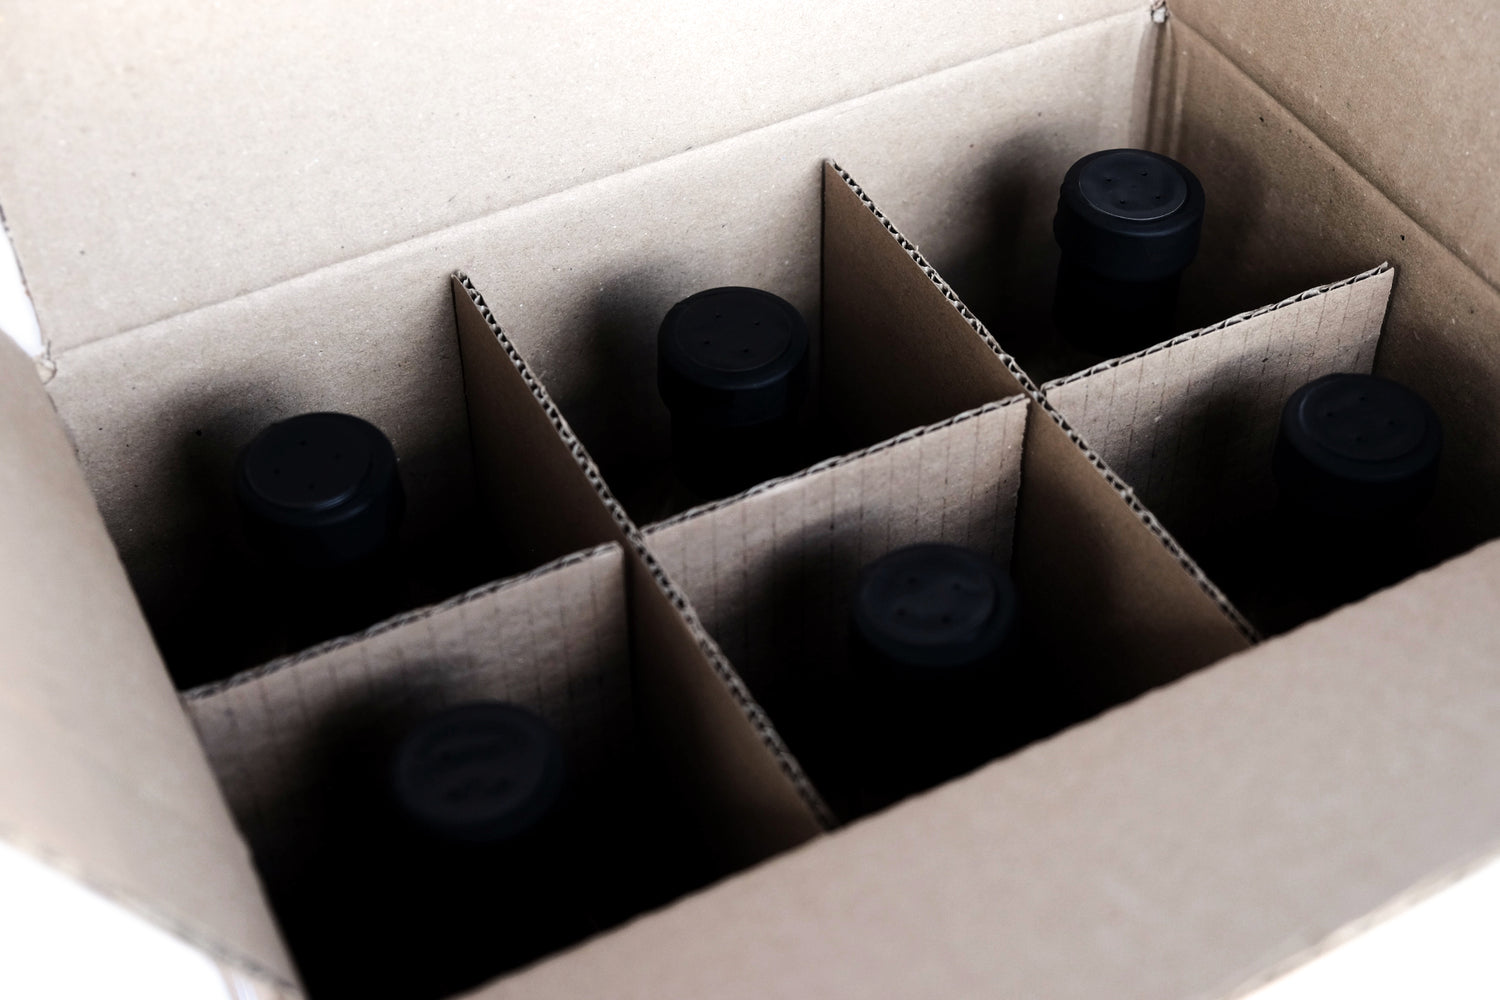 Geschenke kaufen | Box mit 6 Flaschen zum Preis von 4 | Mengenrabatt + Kostenloser Versand innerhalb Deutschlands | Ingwersirup BIO GINGER PREMIUM MIX | BIOGINGER.DE